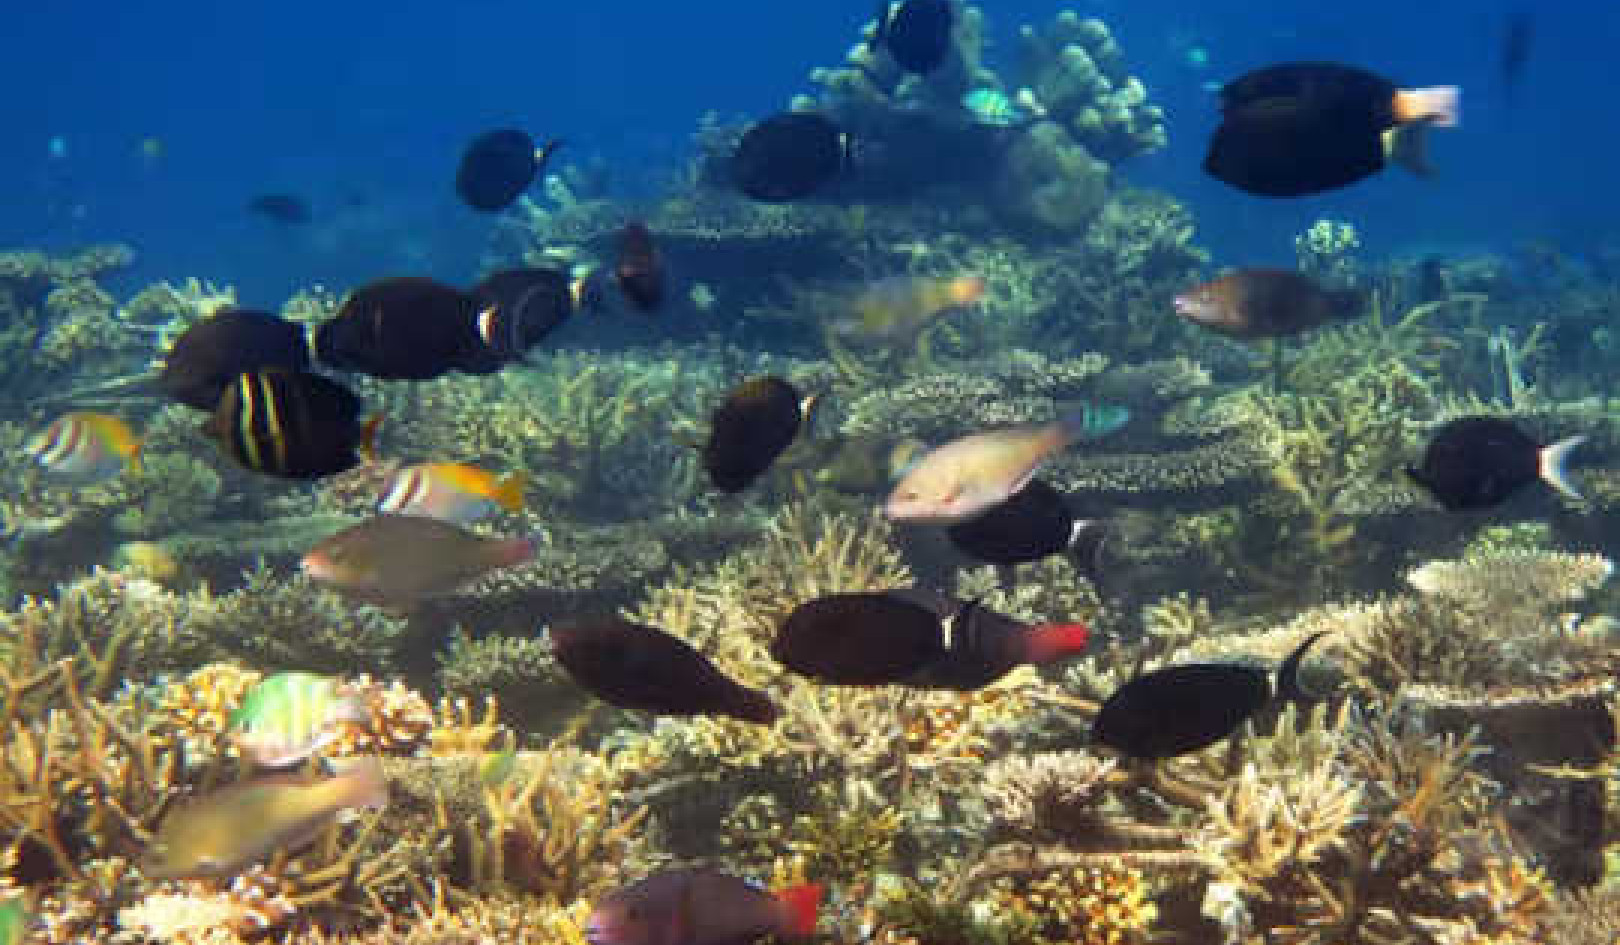 Mercan Resifleri Neden 1.5°C Küresel Isınmayla Yok Olabilir?